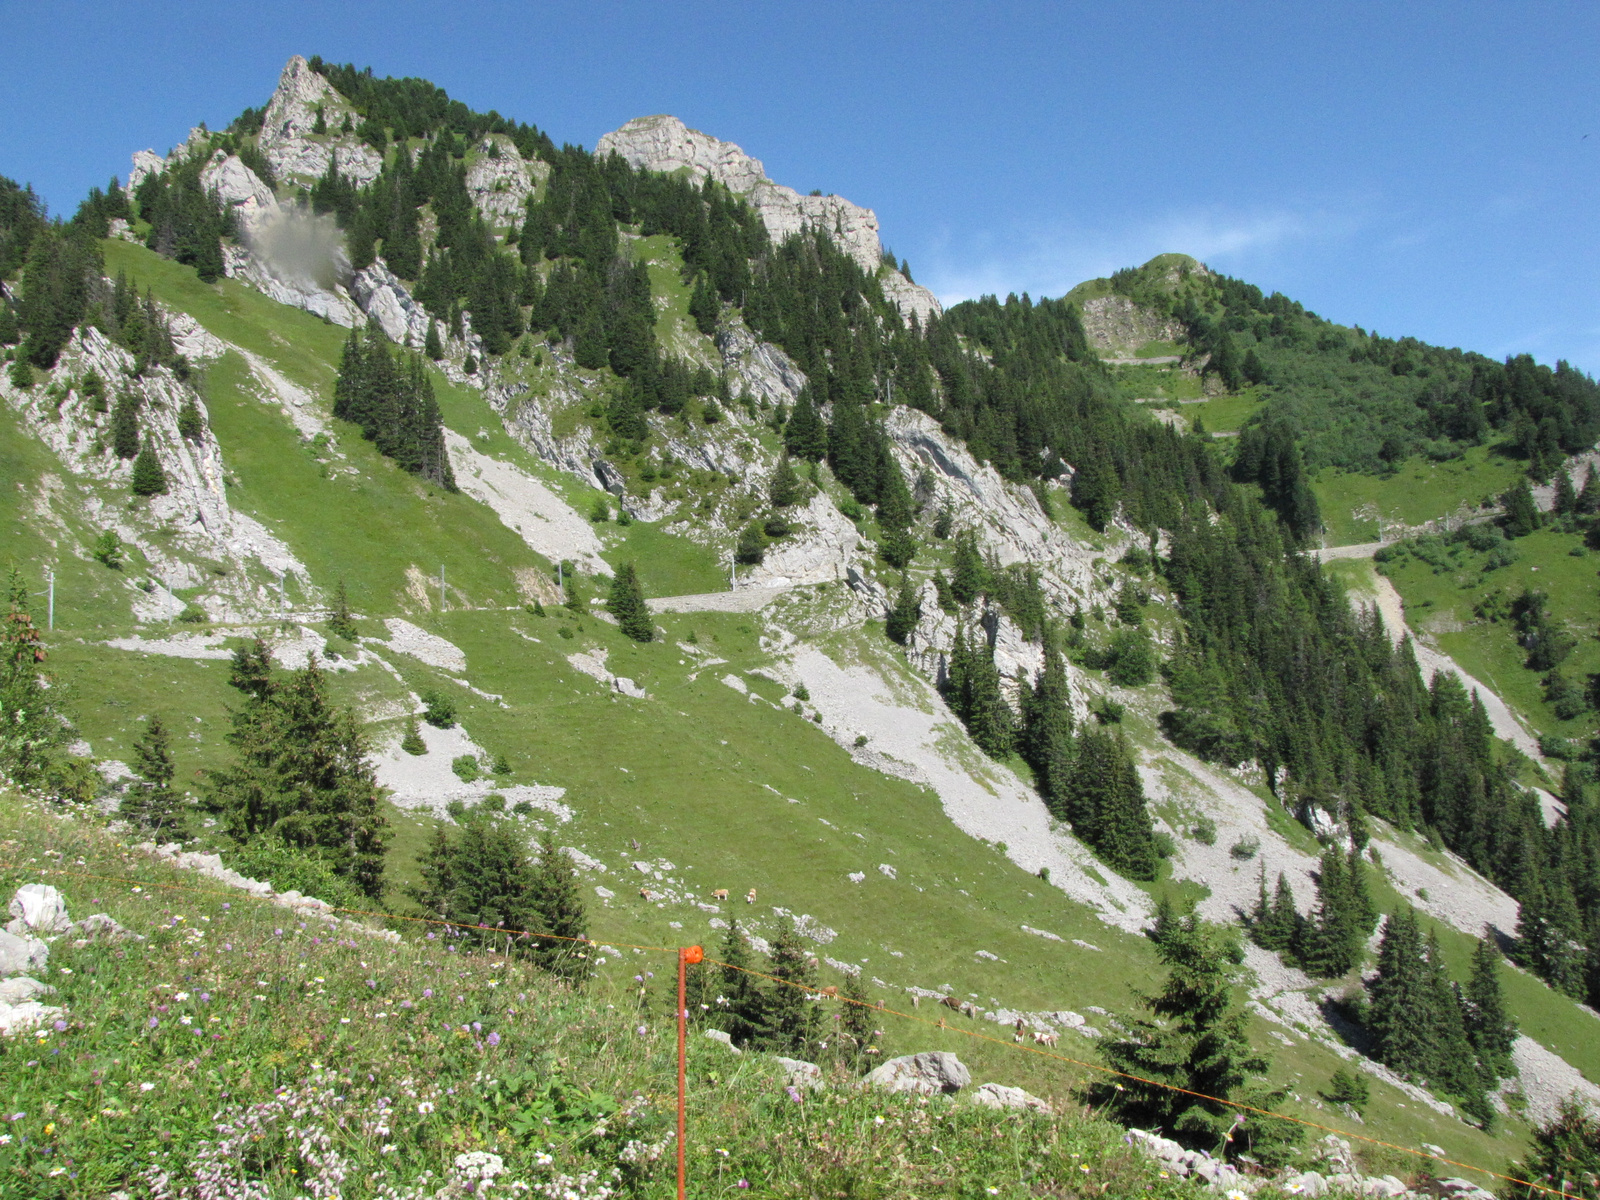 Svájc, Jungfrau Region, Schynigeplatte Bahn, SzG3